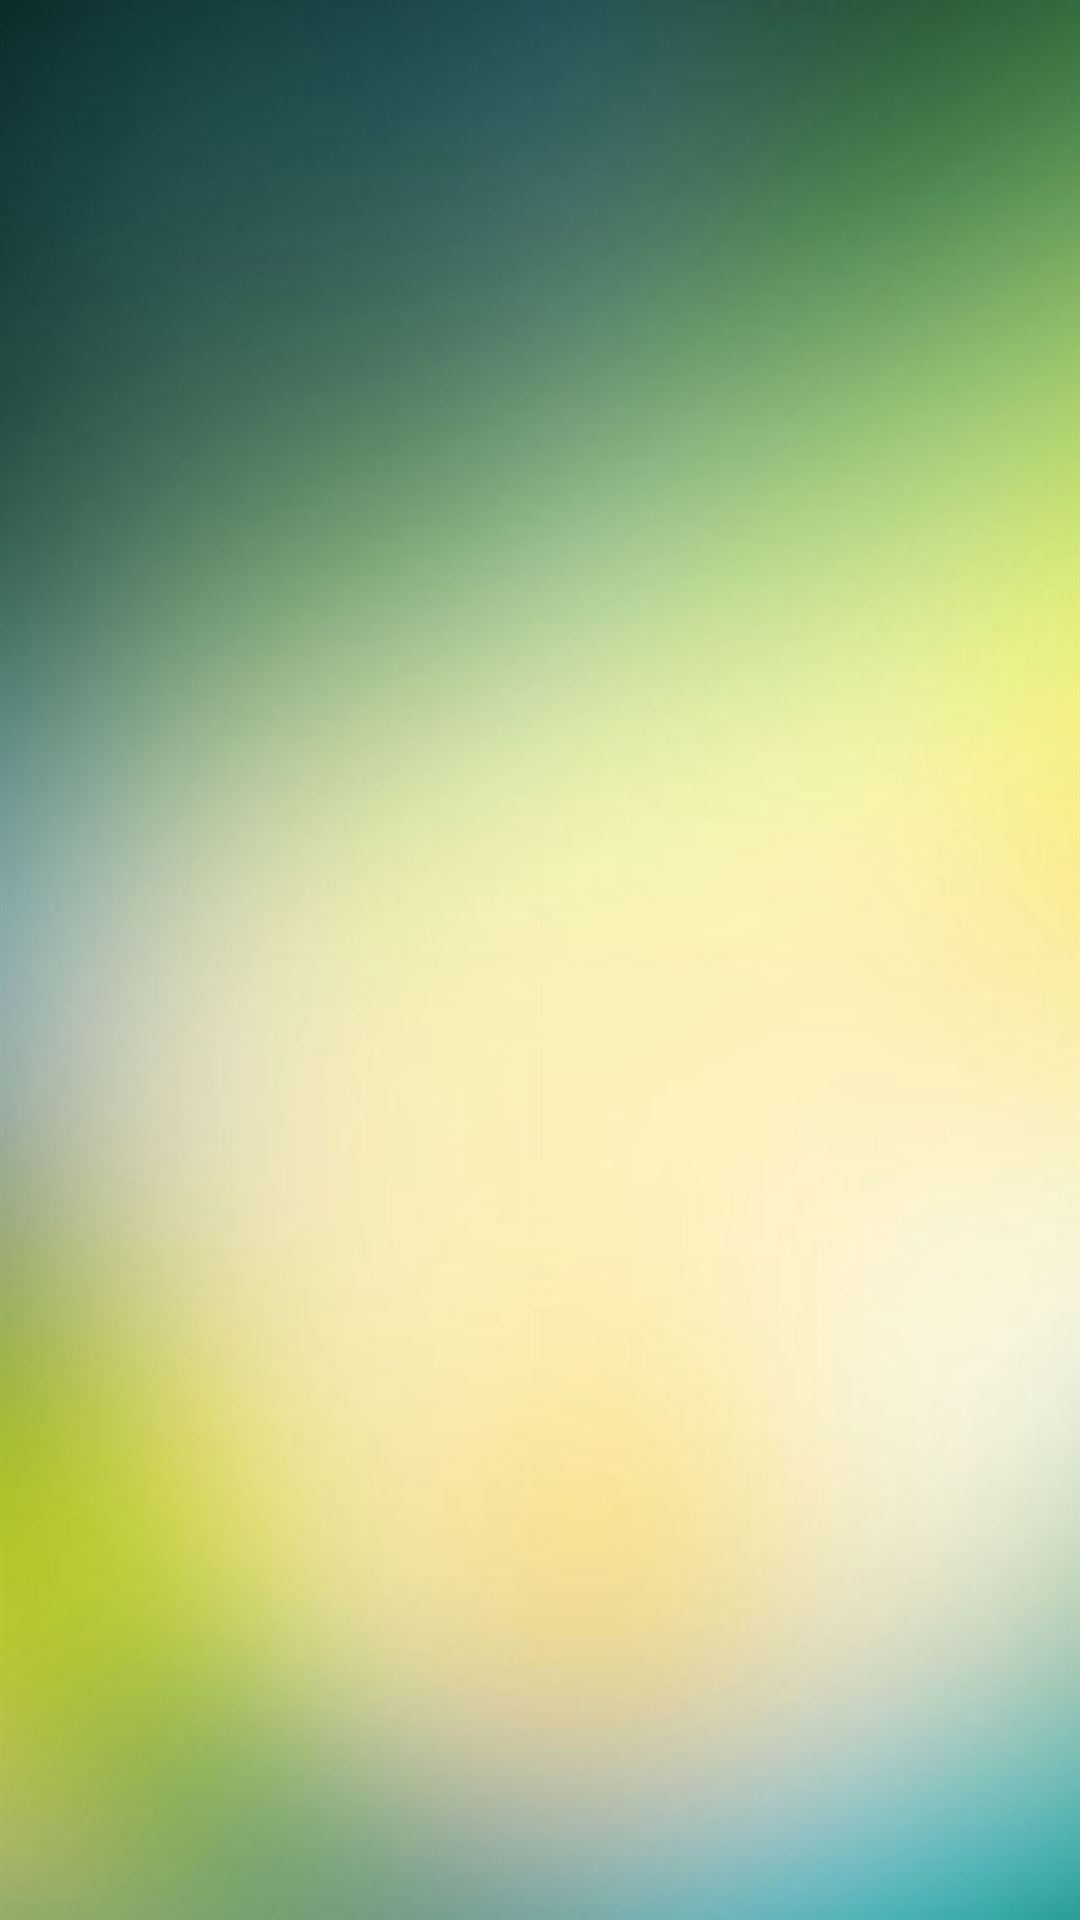 Sử dụng những hình nền iPhone với khả năng tạo độ mờ Gradient Blur trang trí cho điện thoại của bạn. Với hiệu ứng màu xanh lá cây trầm lắng, chiếc điện thoại của bạn sẽ trở nên độc đáo hơn bao giờ hết. Hãy xem hình liên quan để khám phá tùy chỉnh hình nền cho iPhone của bạn.